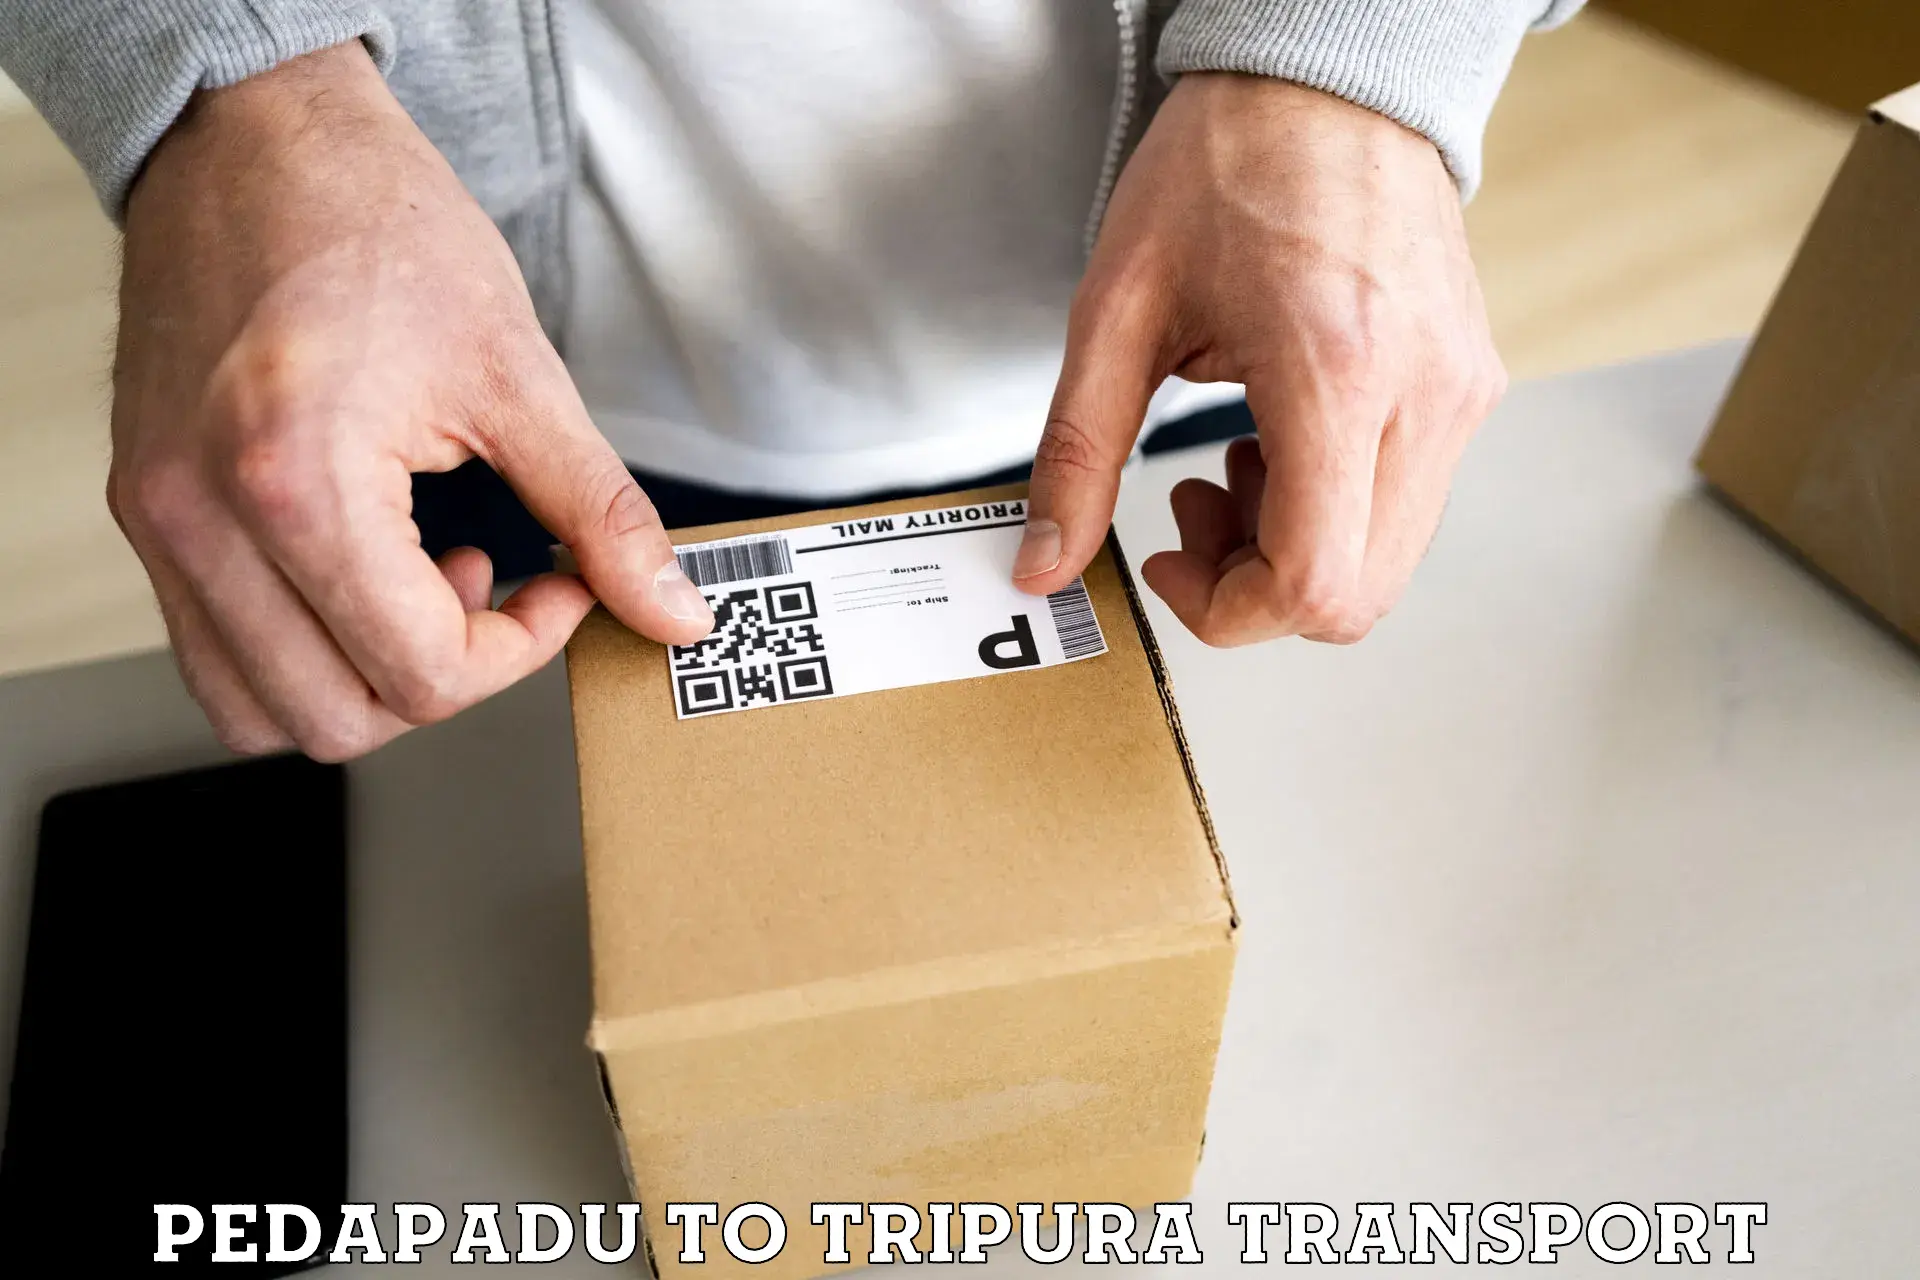 Best transport services in India Pedapadu to Tripura